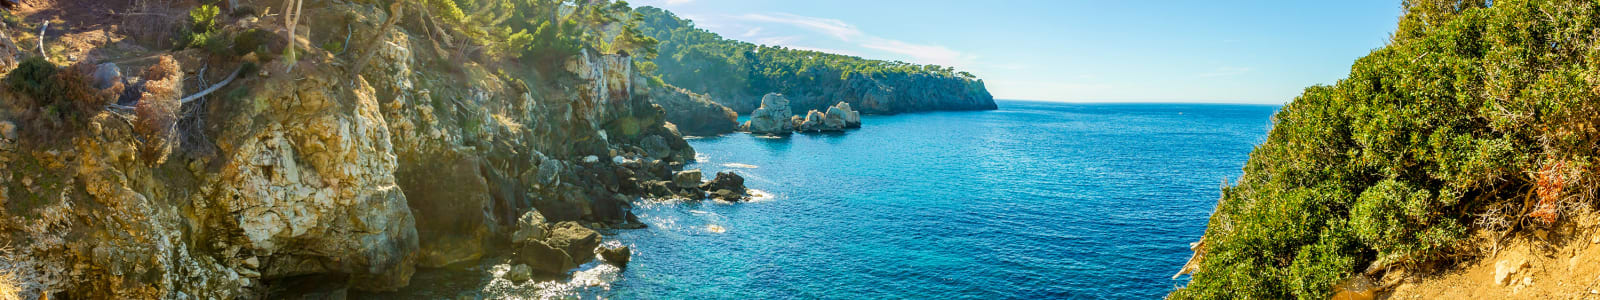 Remote Ibiza coastline